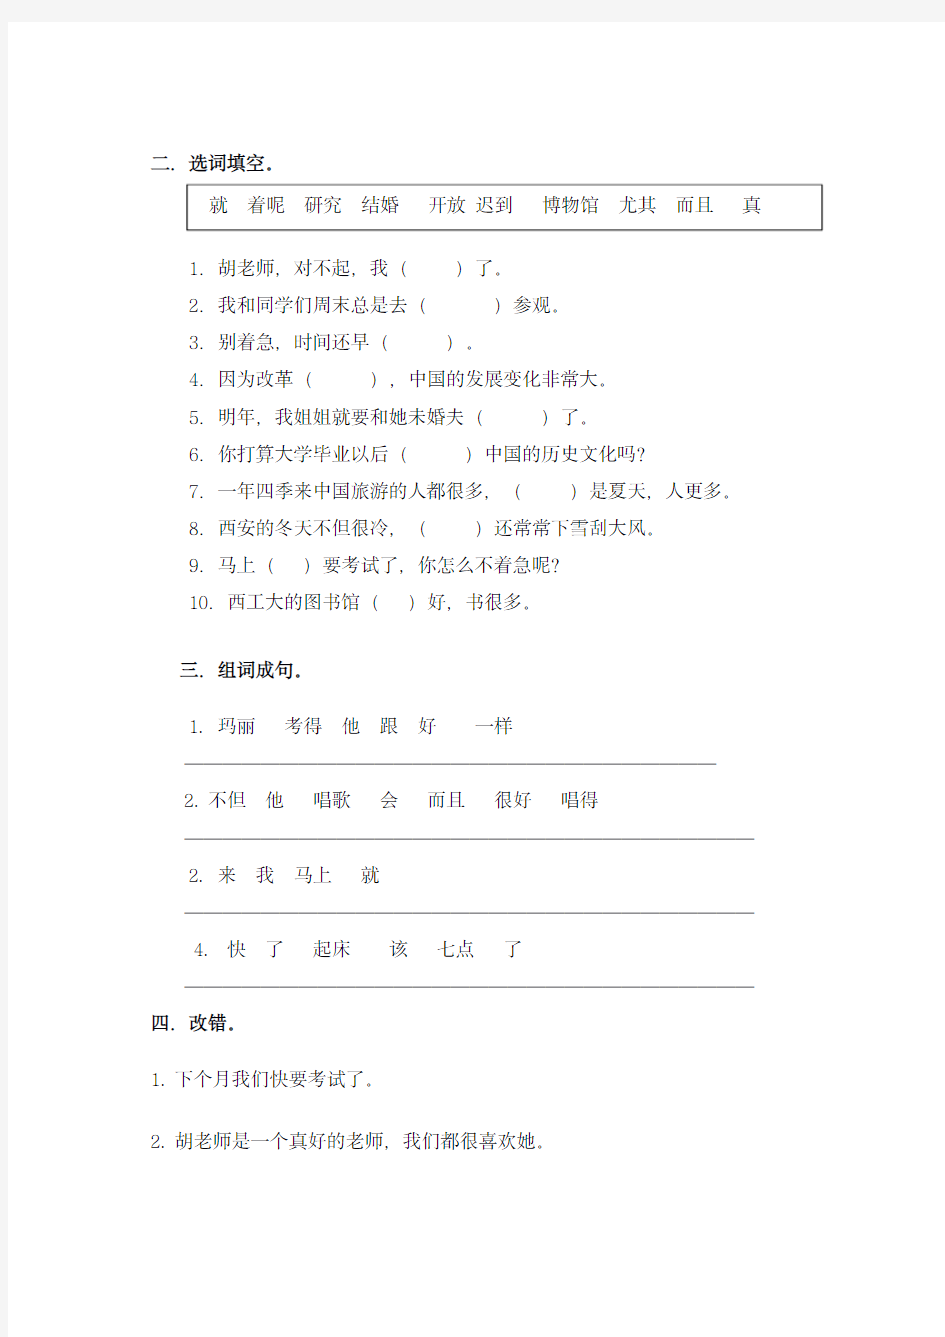 《汉语教程》第二册(上)第7-8课练习题